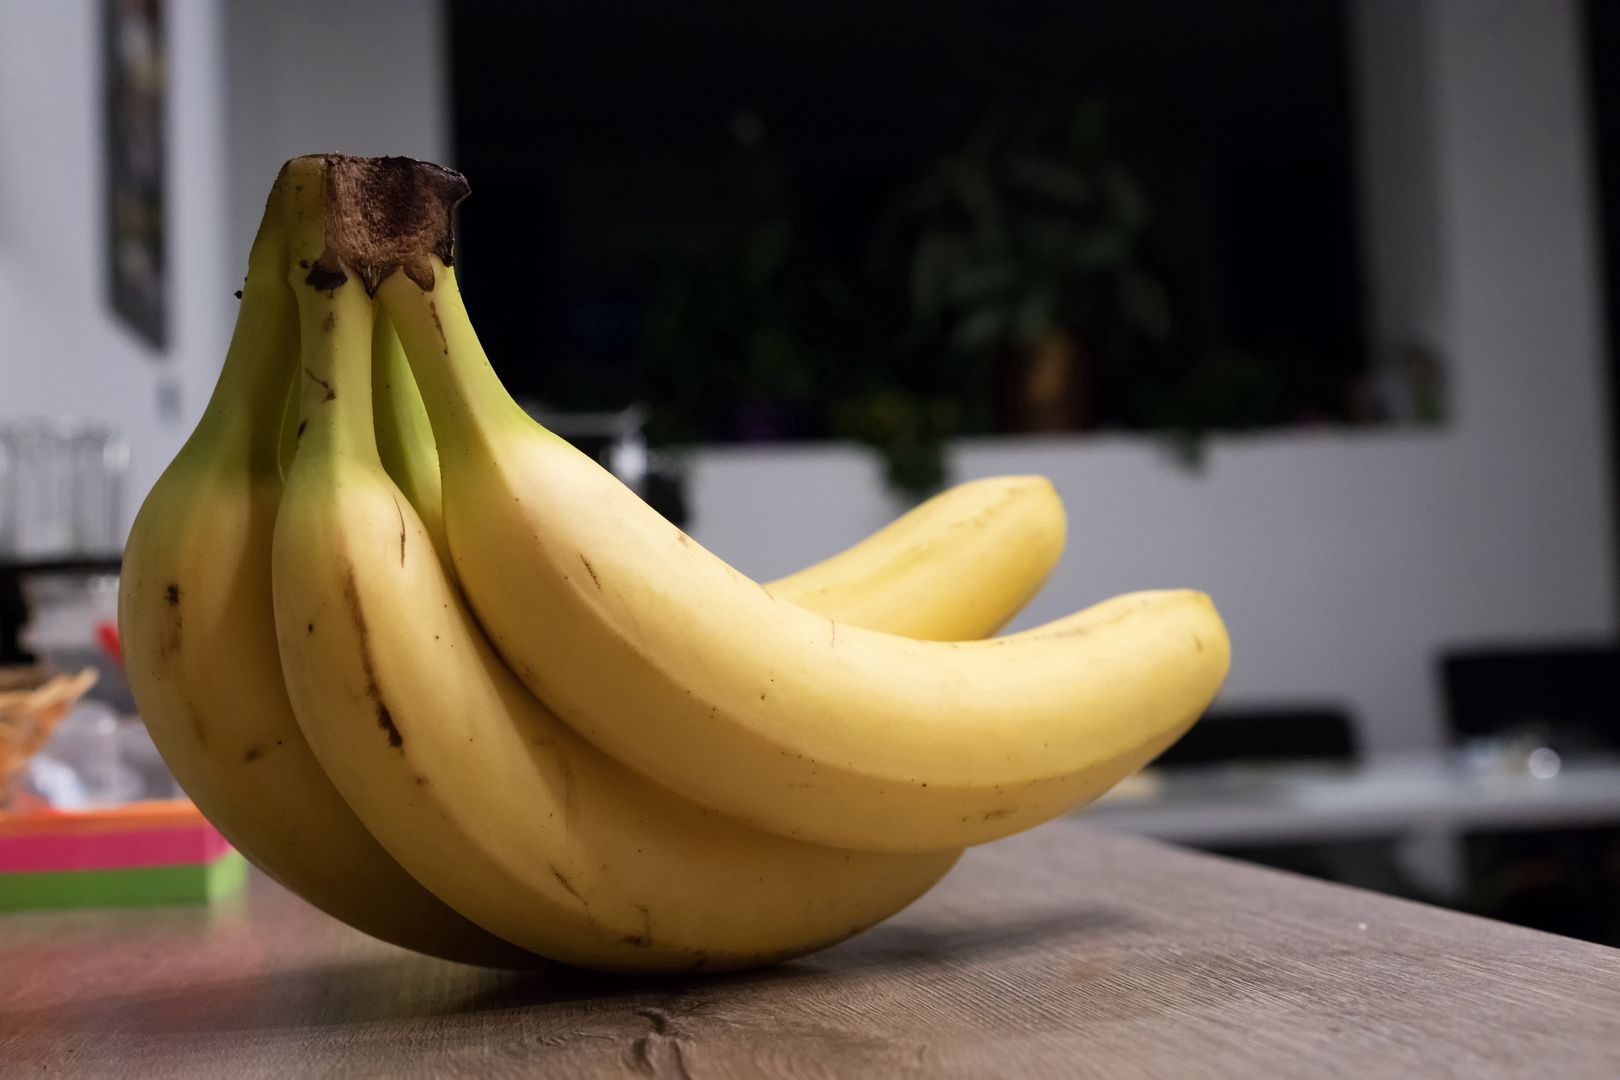 Nigdy nie wyrzucaj skórki od banana. Przyda się w każdym domu